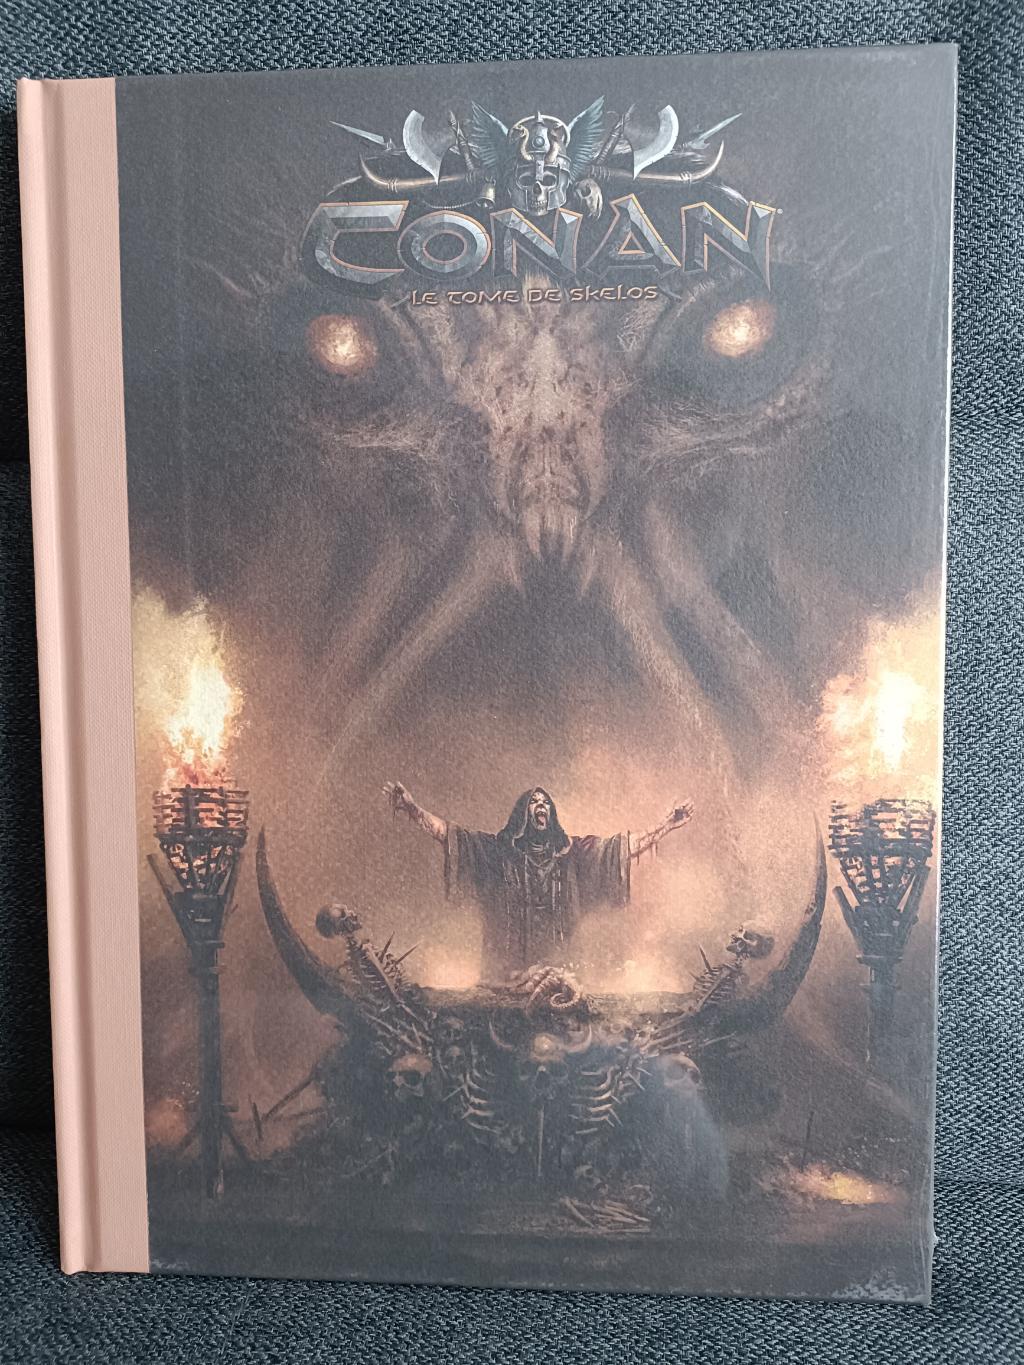 Conan (monolith) - Le Tome De Skelos